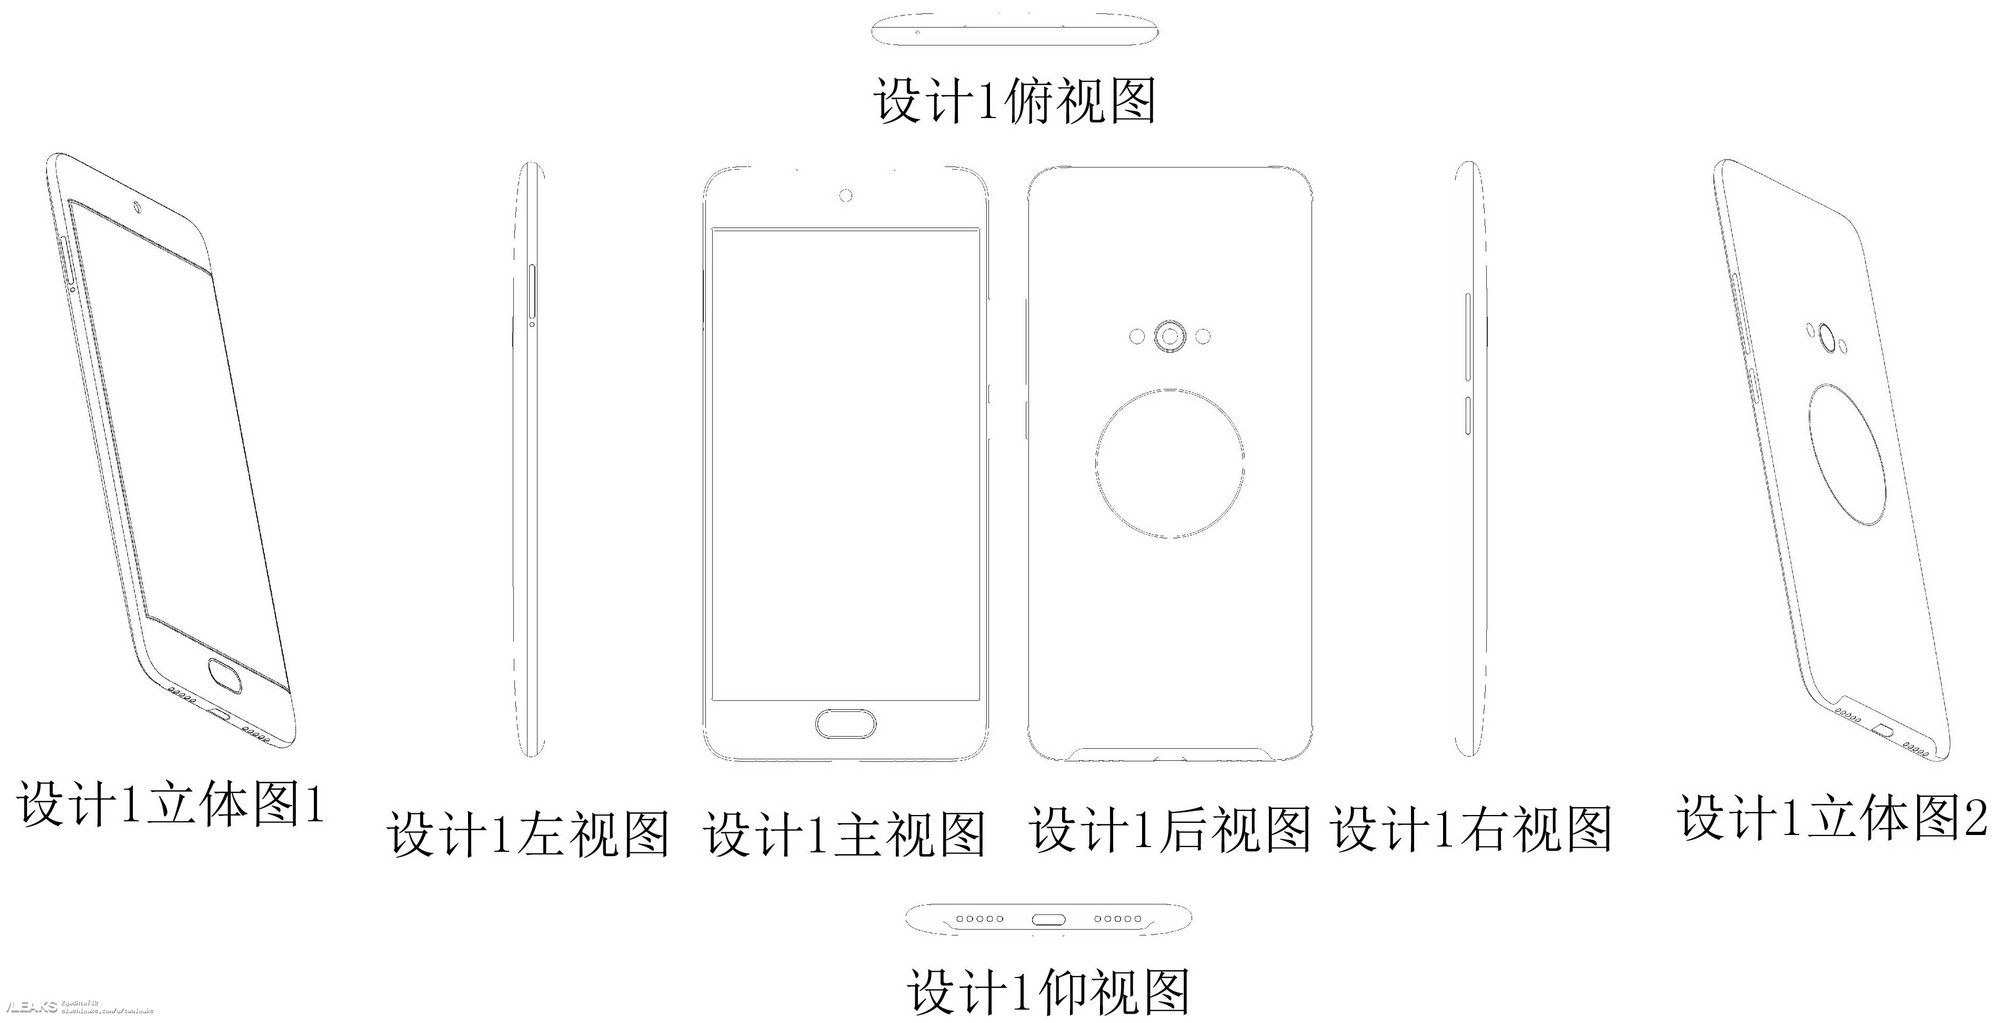 Meizu патентует еще один смартфон со вторым экраном-6